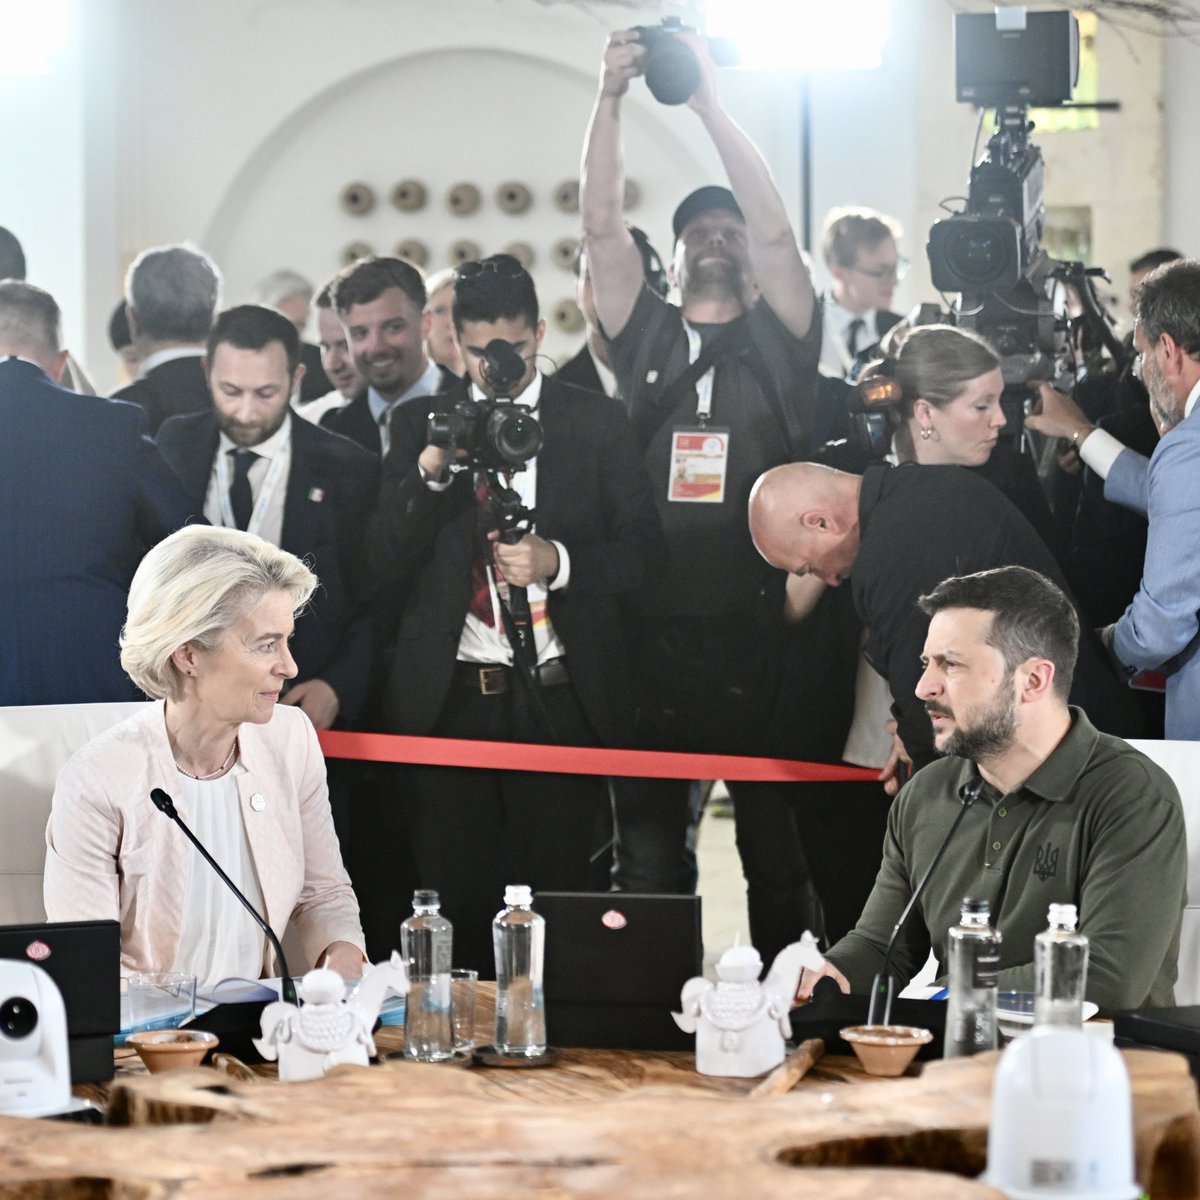 Урсула фон дер Ляйен: G7 договорилась предоставить Украине кредиты на сумму около $50 млрд до конца года. Мы будем использовать непредвиденные доходы от суверенных активов России для их погашения. Это основано на действиях ЕС, где мы уже направляем эту непредвиденную прибыль на оборону и восстановление Украины.